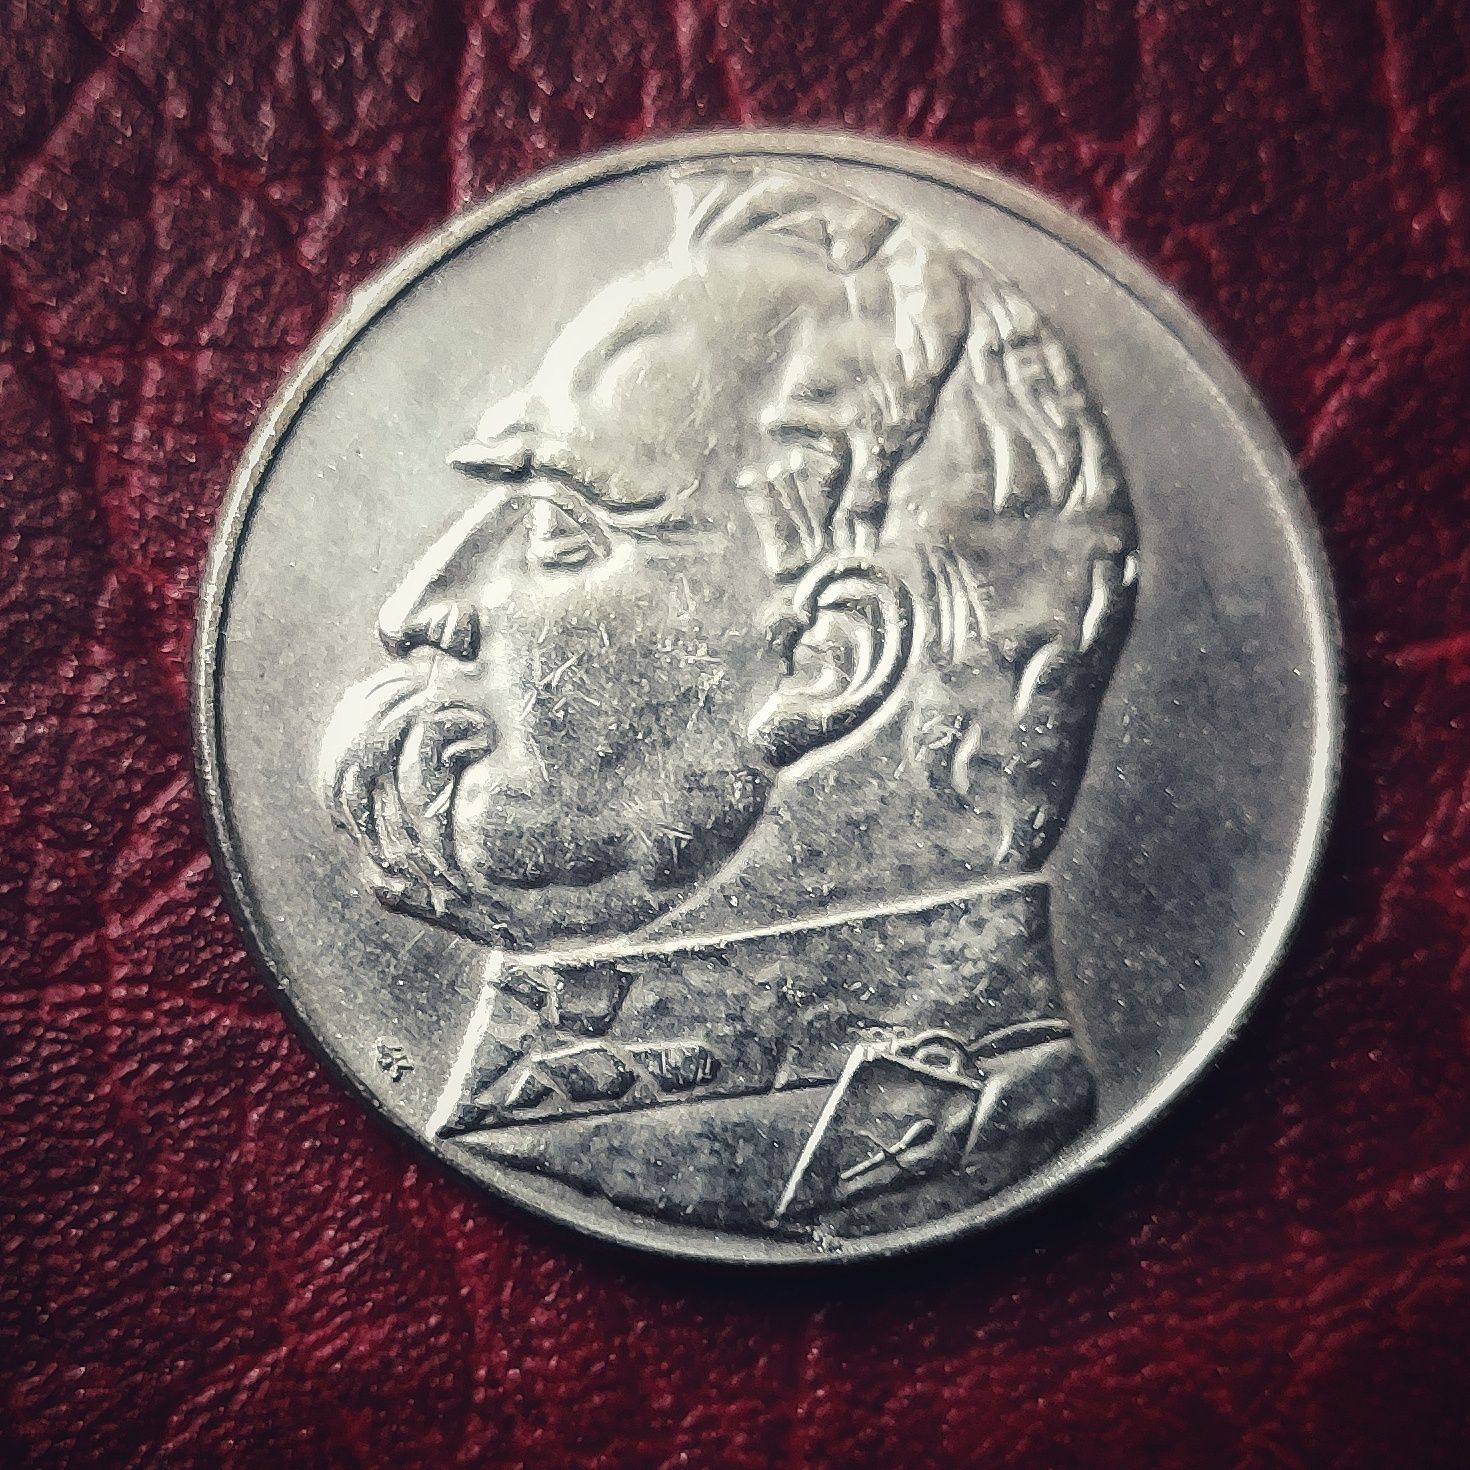 10 złotych z 1934 roku - Józef Piłsudski